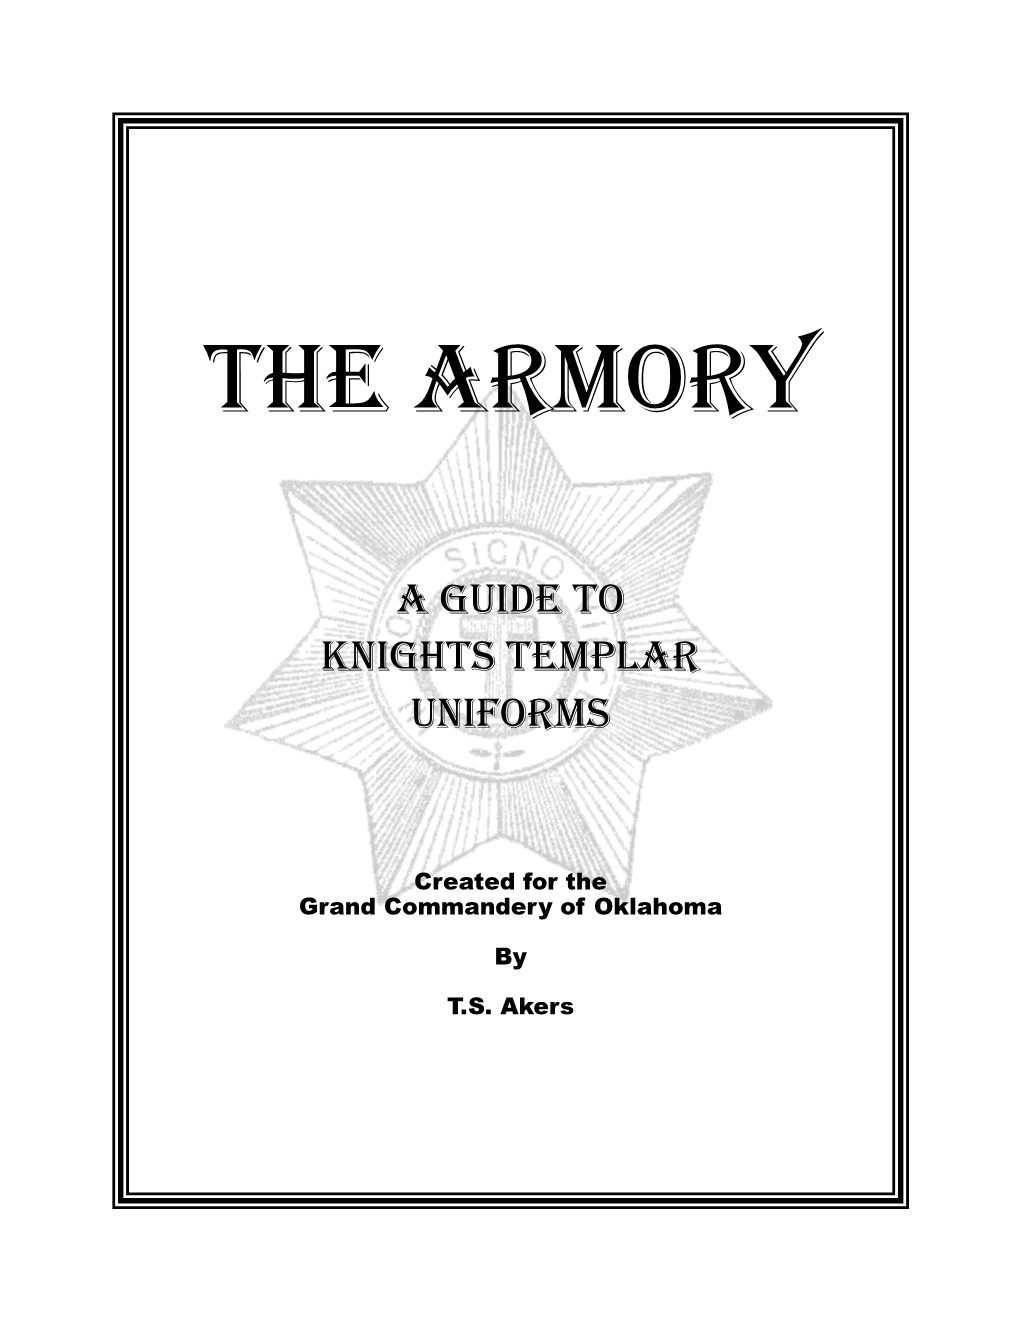 Knight Templar Uniform Guide